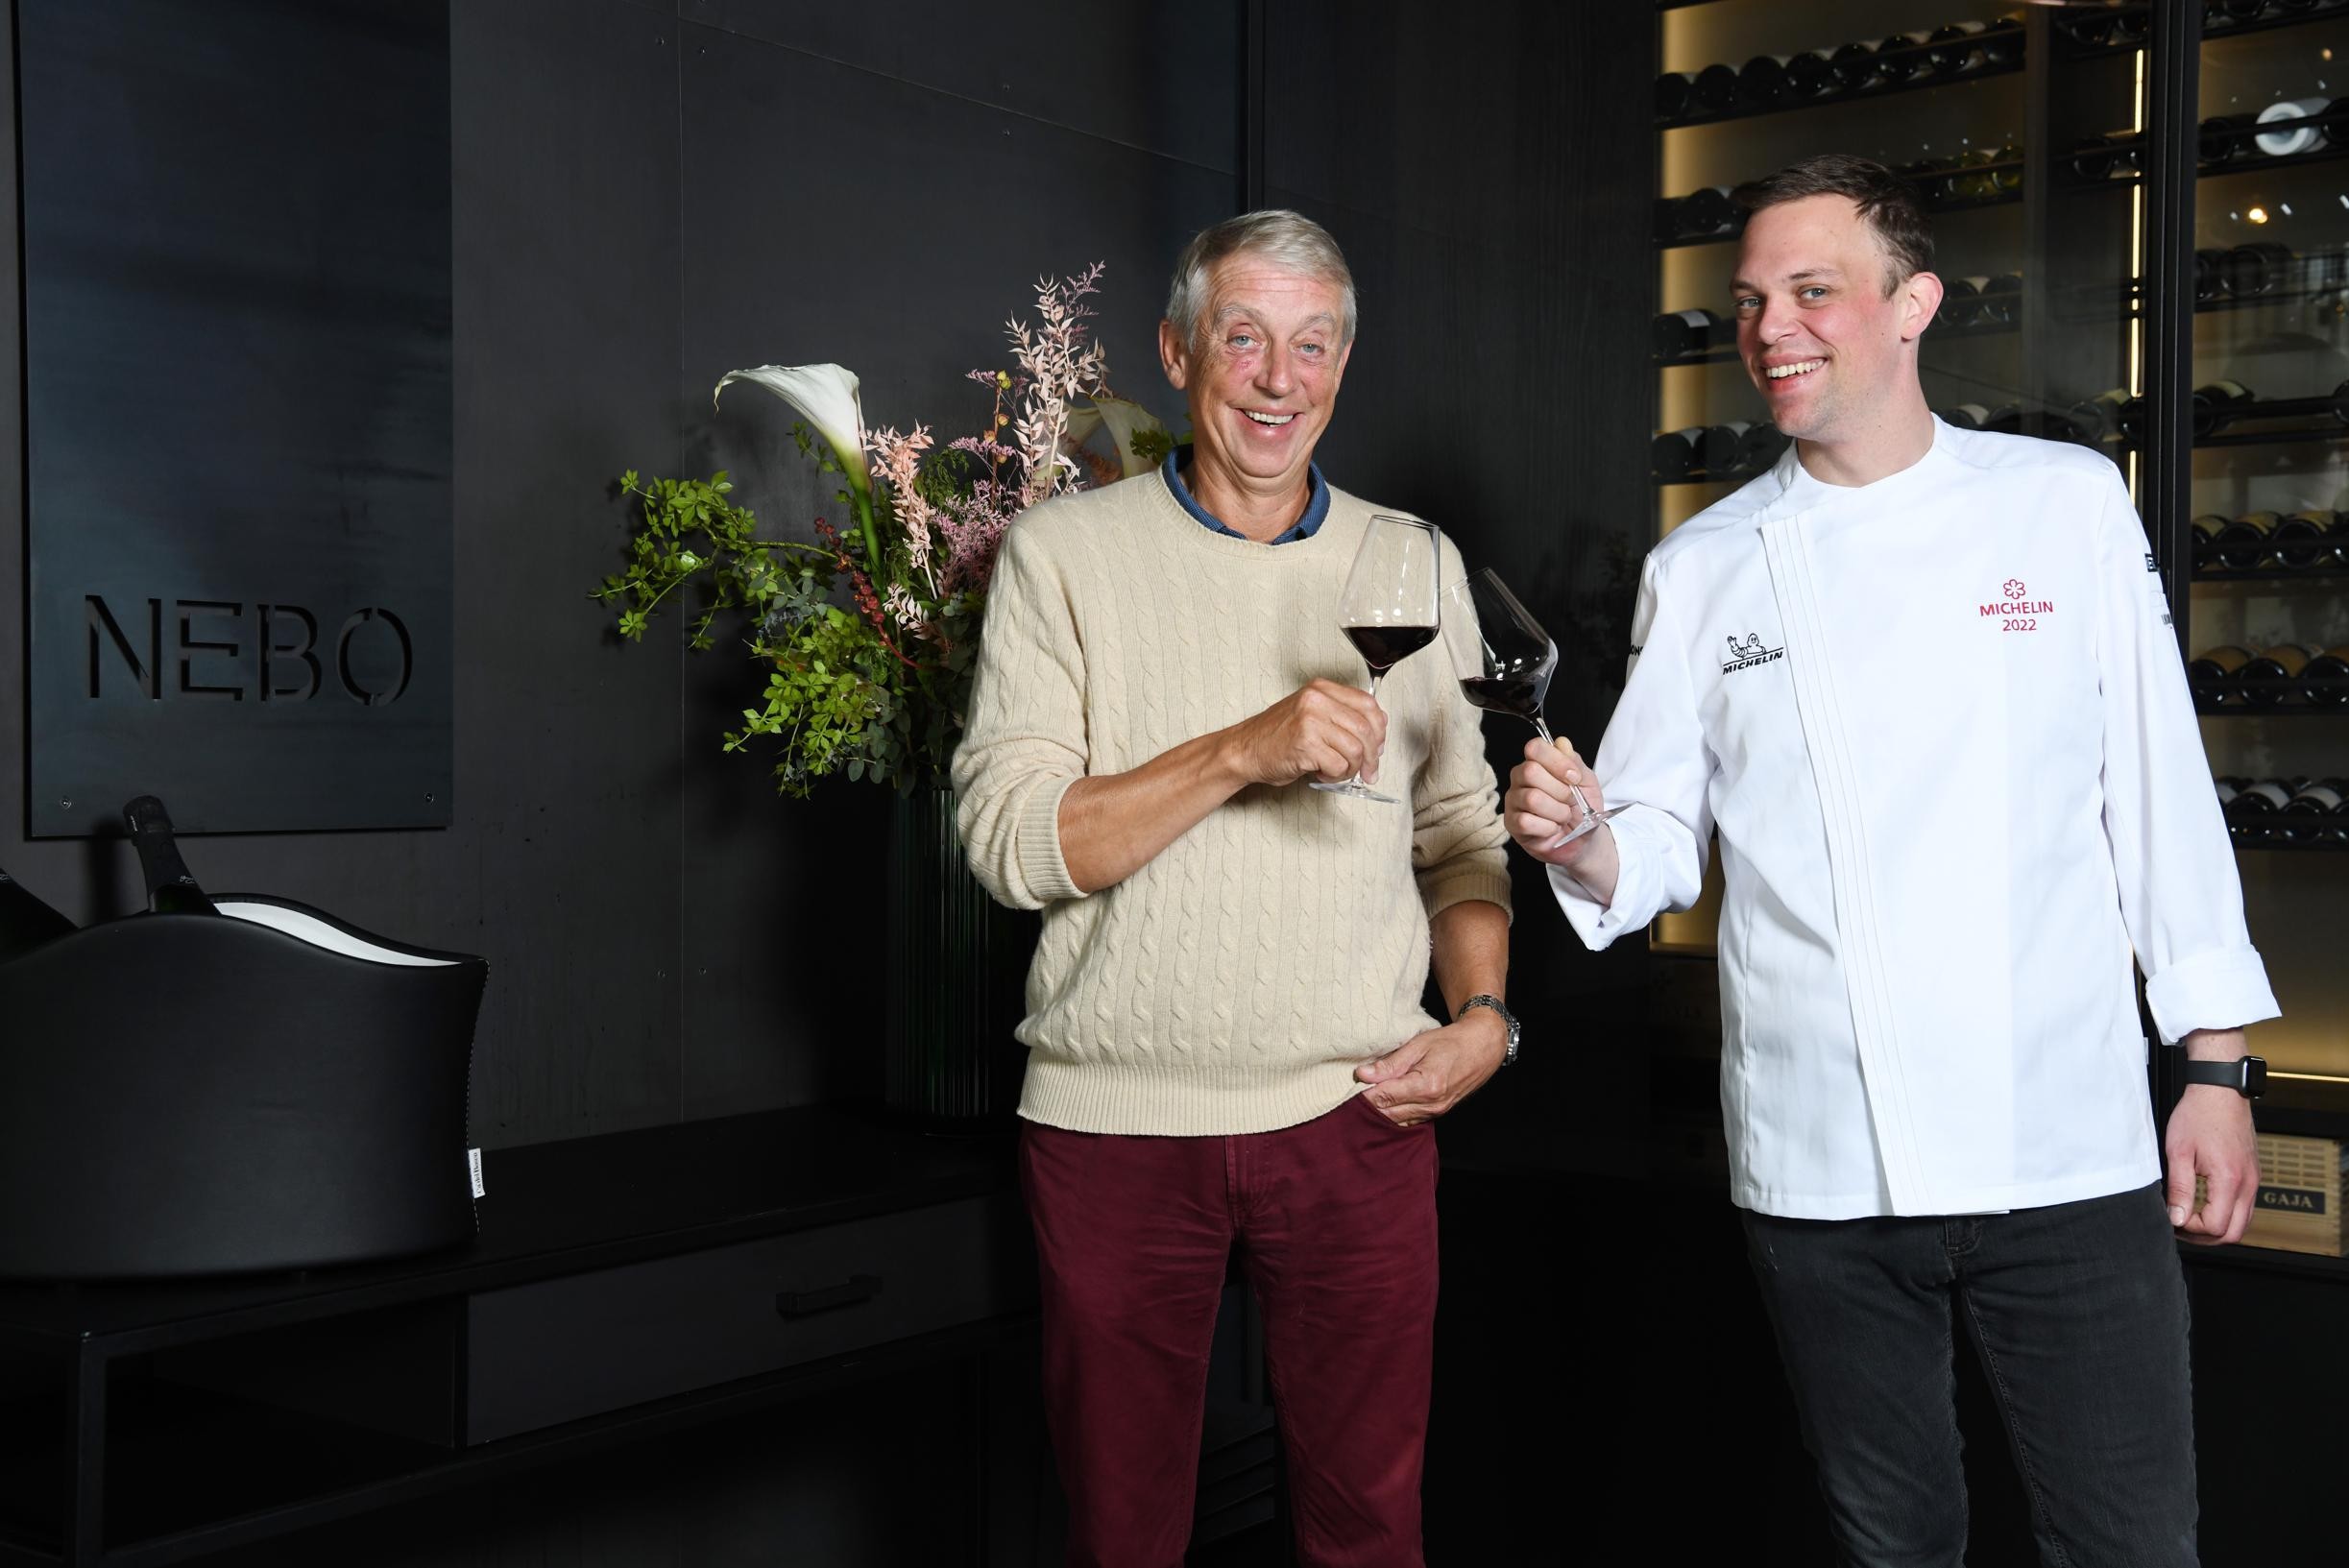 Antwerps Nebo-chef Dimitri De Koninck krijgt Michelinster, net als papa Dirk: “Soms meer leermeester dan vader”